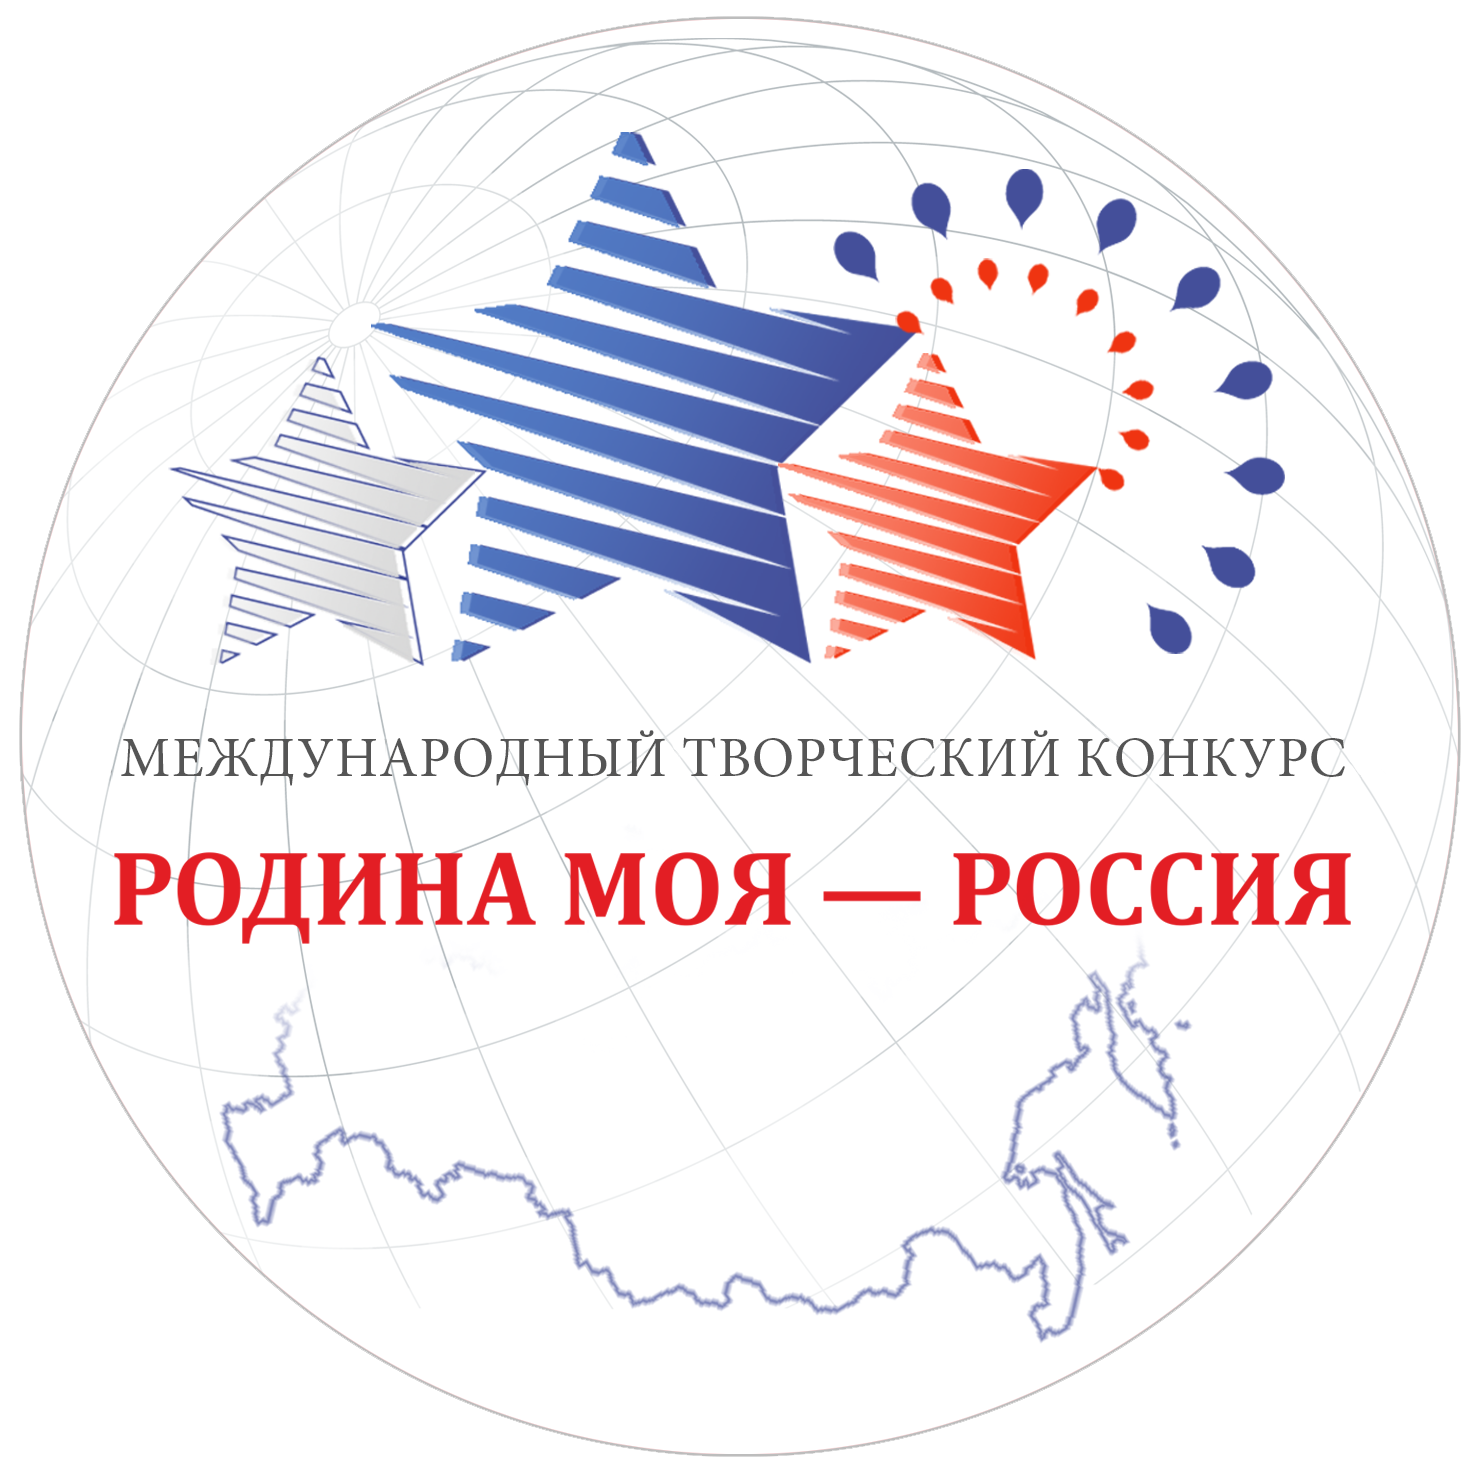 Эмблема конкурса Родина моя-Россия